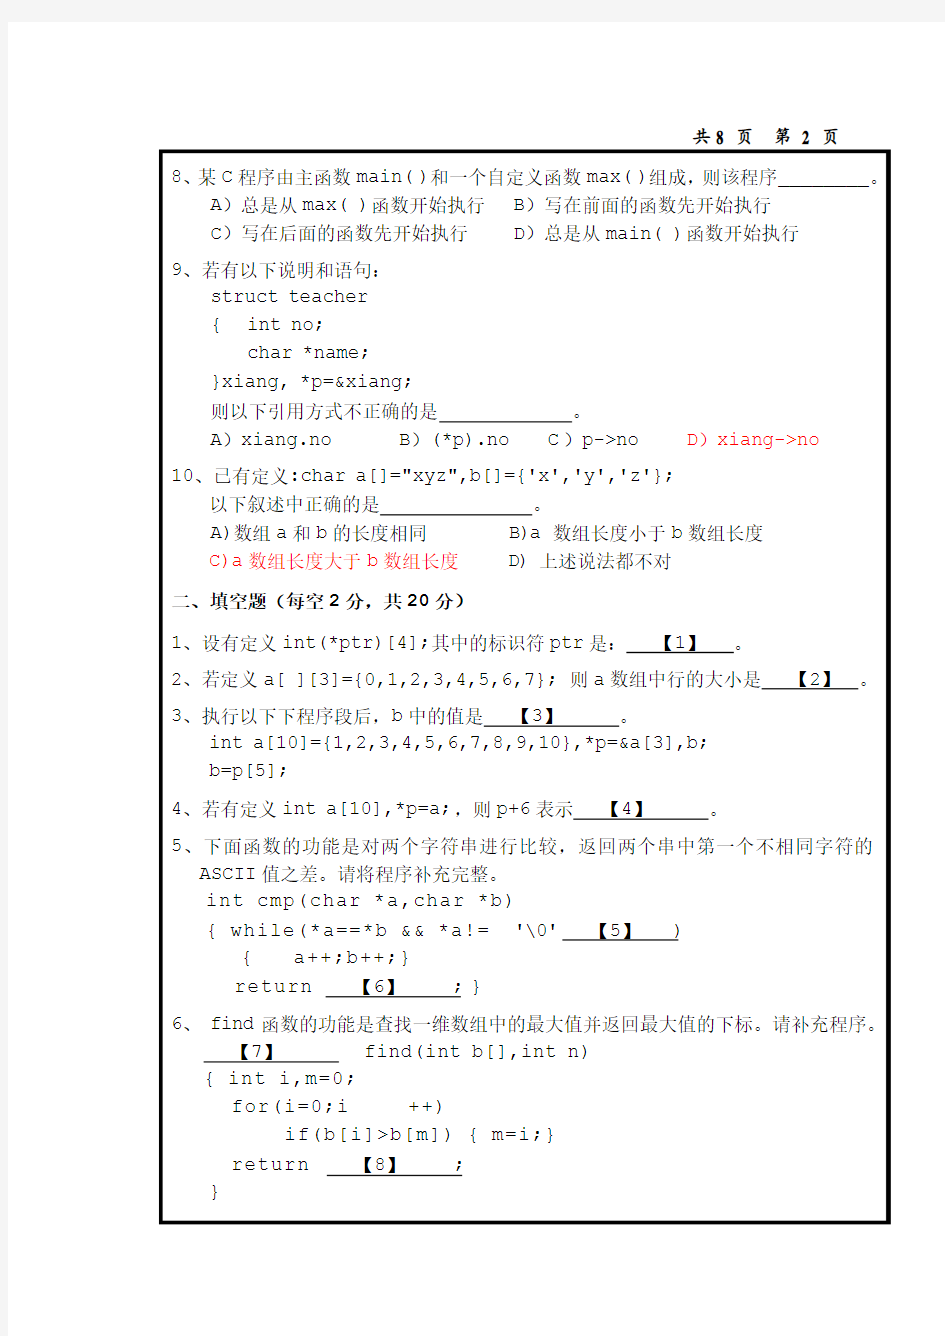 中国海洋大学C语言期末笔试2010年秋A试题(1) 2